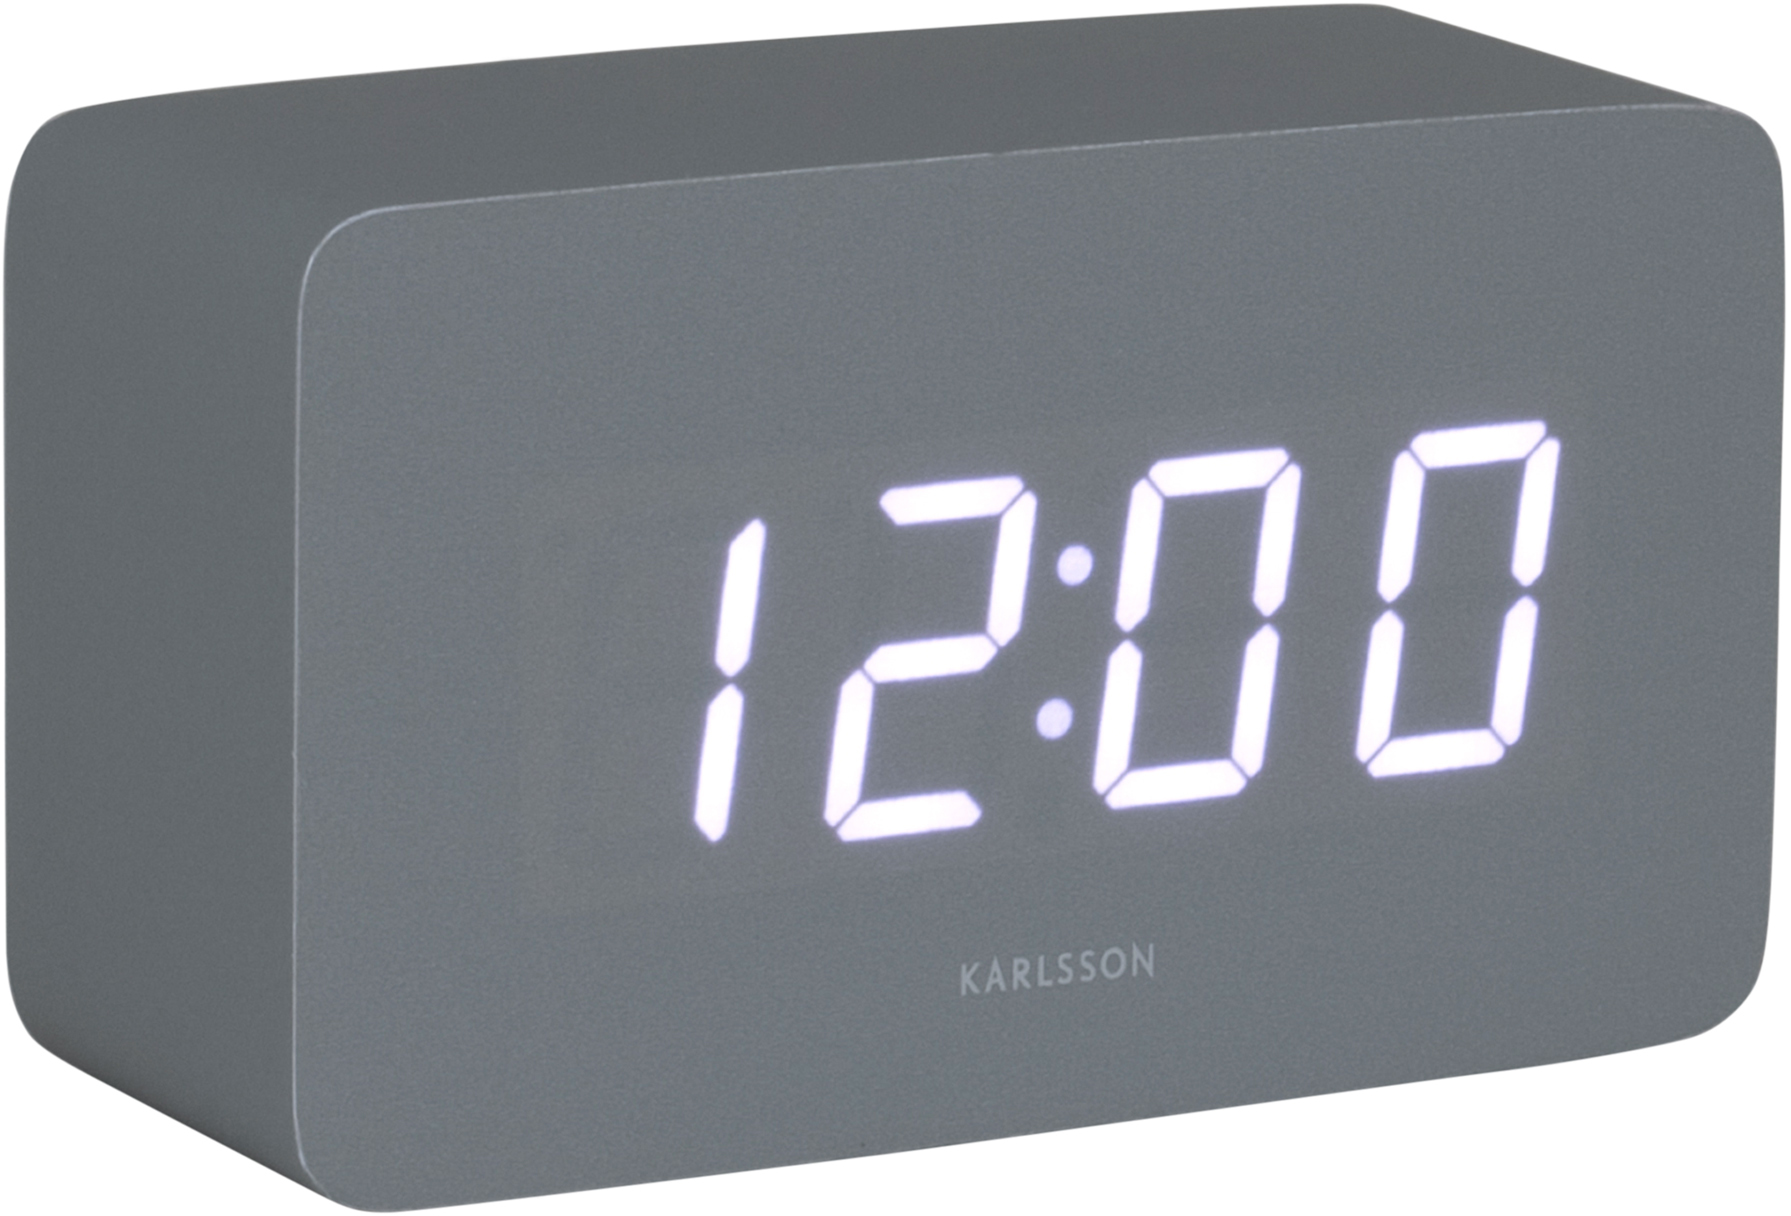 Karlsson Designové LED hodiny s budíkem KA5983GY